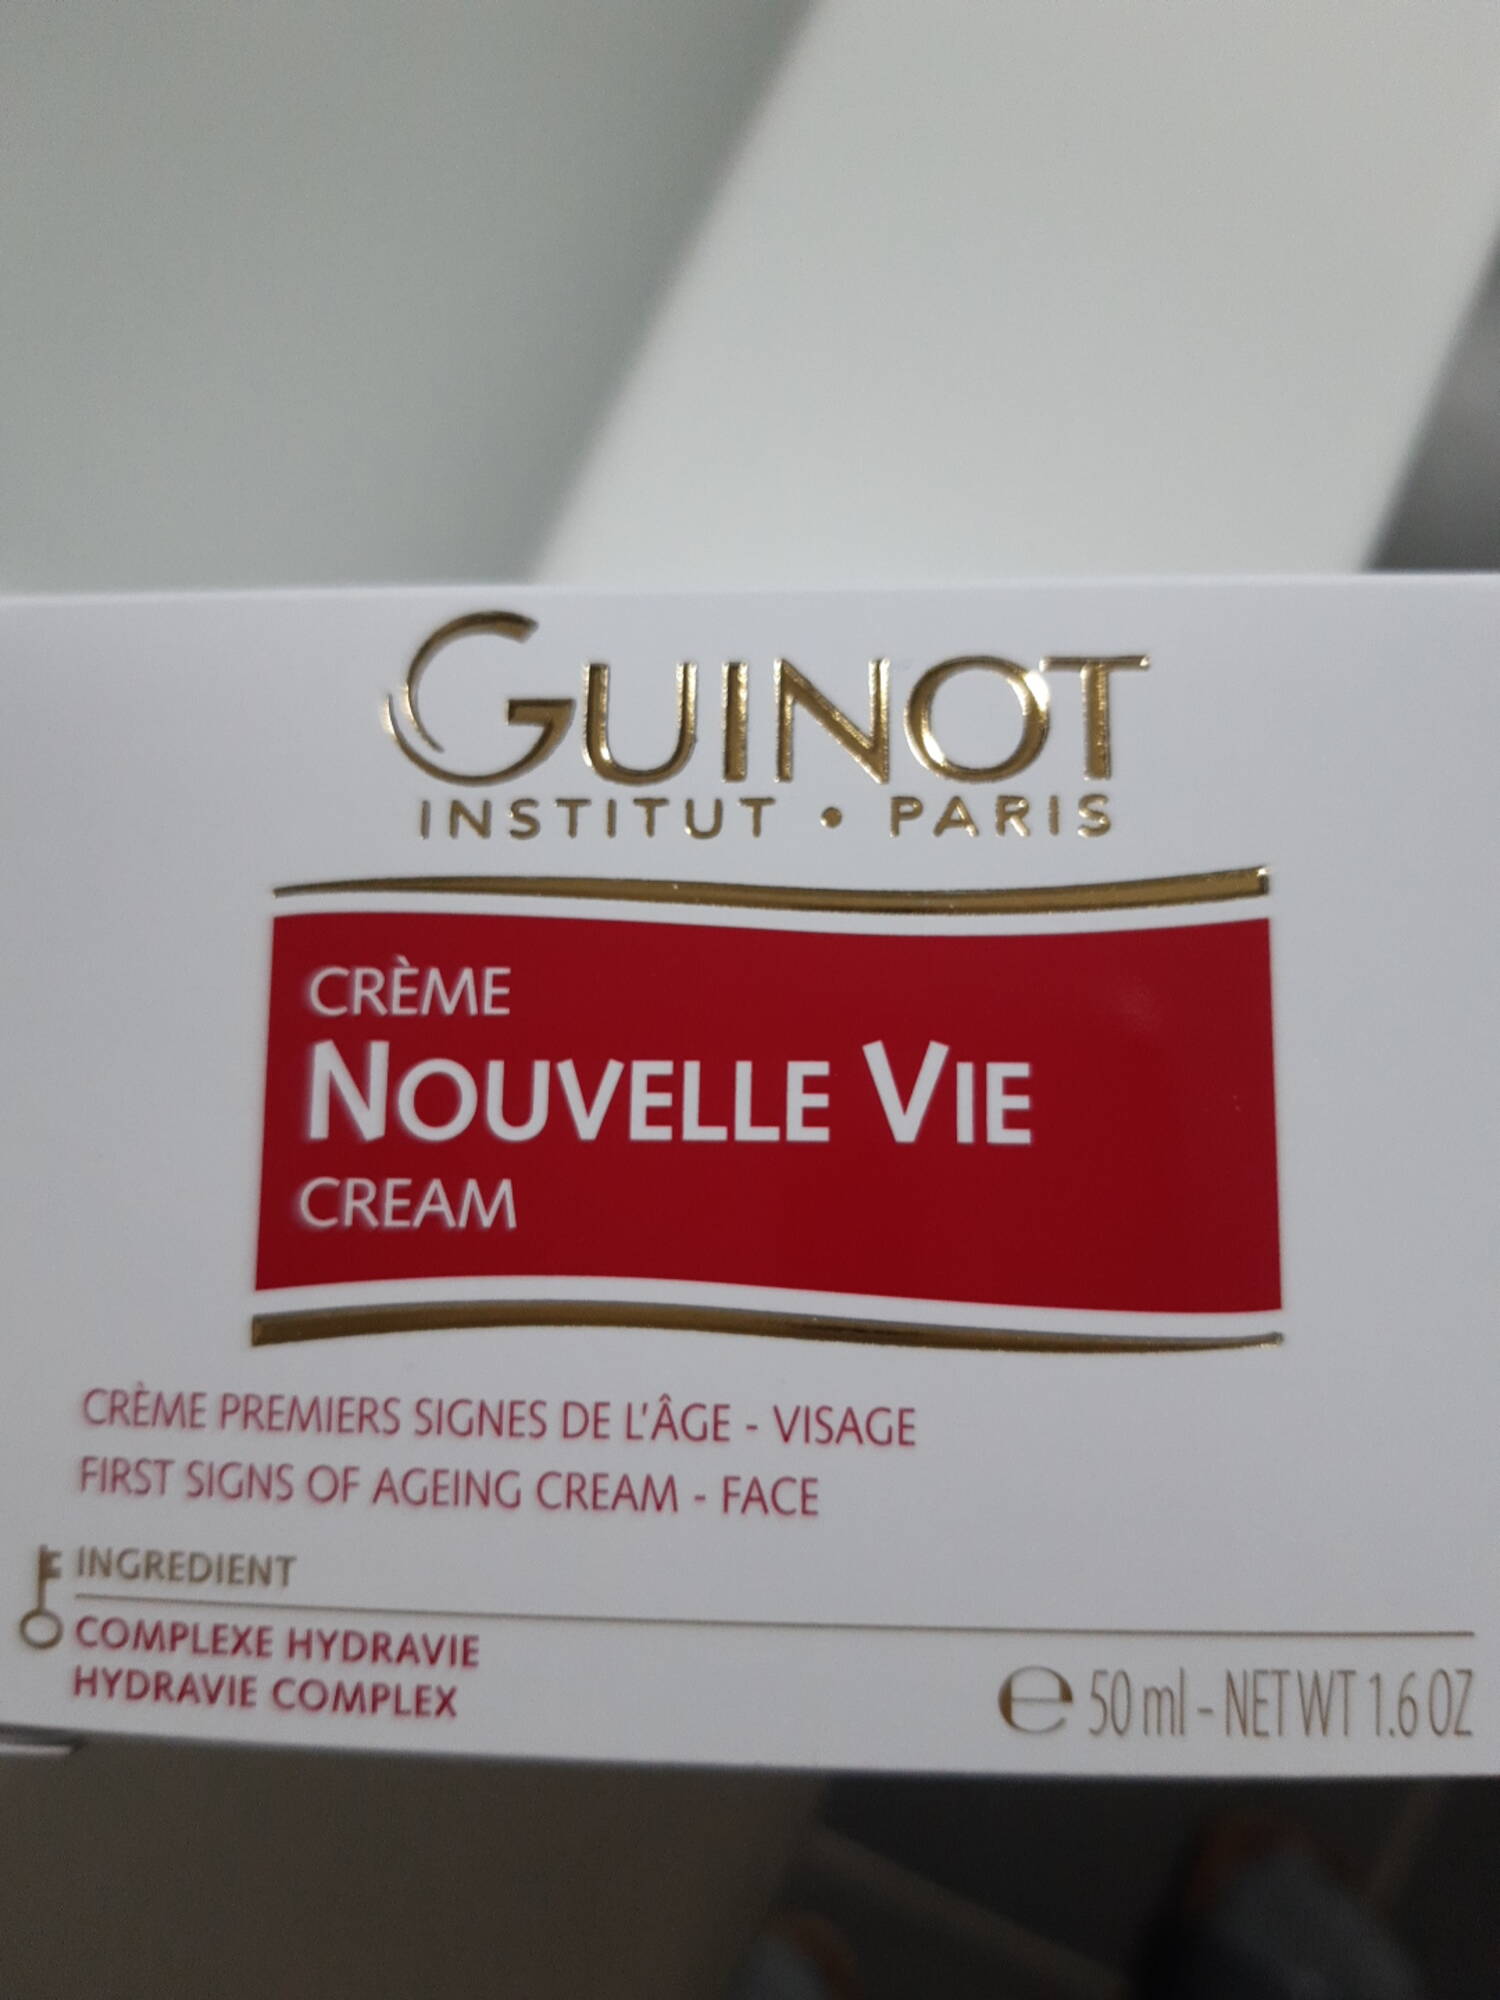 GUINOT - Crème Nouvelle vie